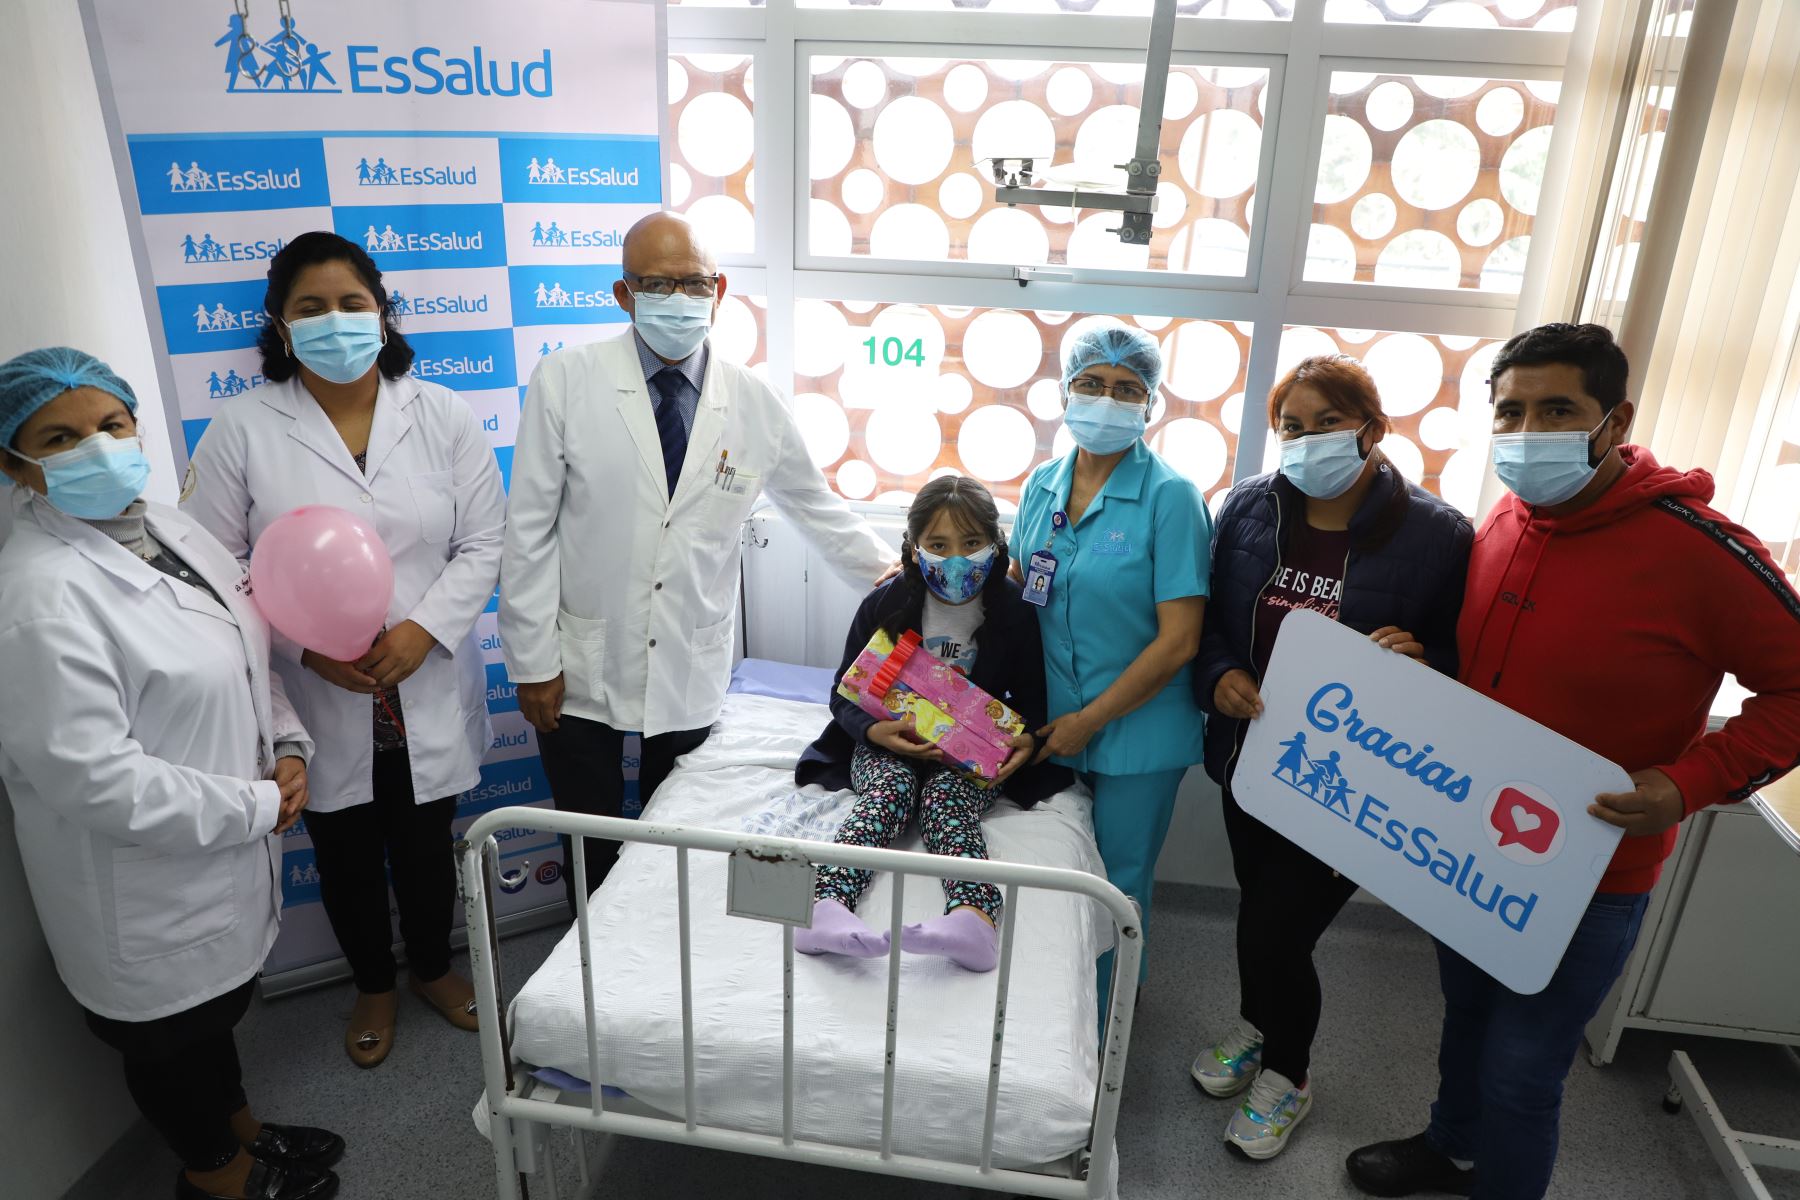 Proeza médica se realizó en el hospital Rebagliati por cirujanos pediatras en plena pandemia del Covid-19. Foto: ANDINA/EsSalud